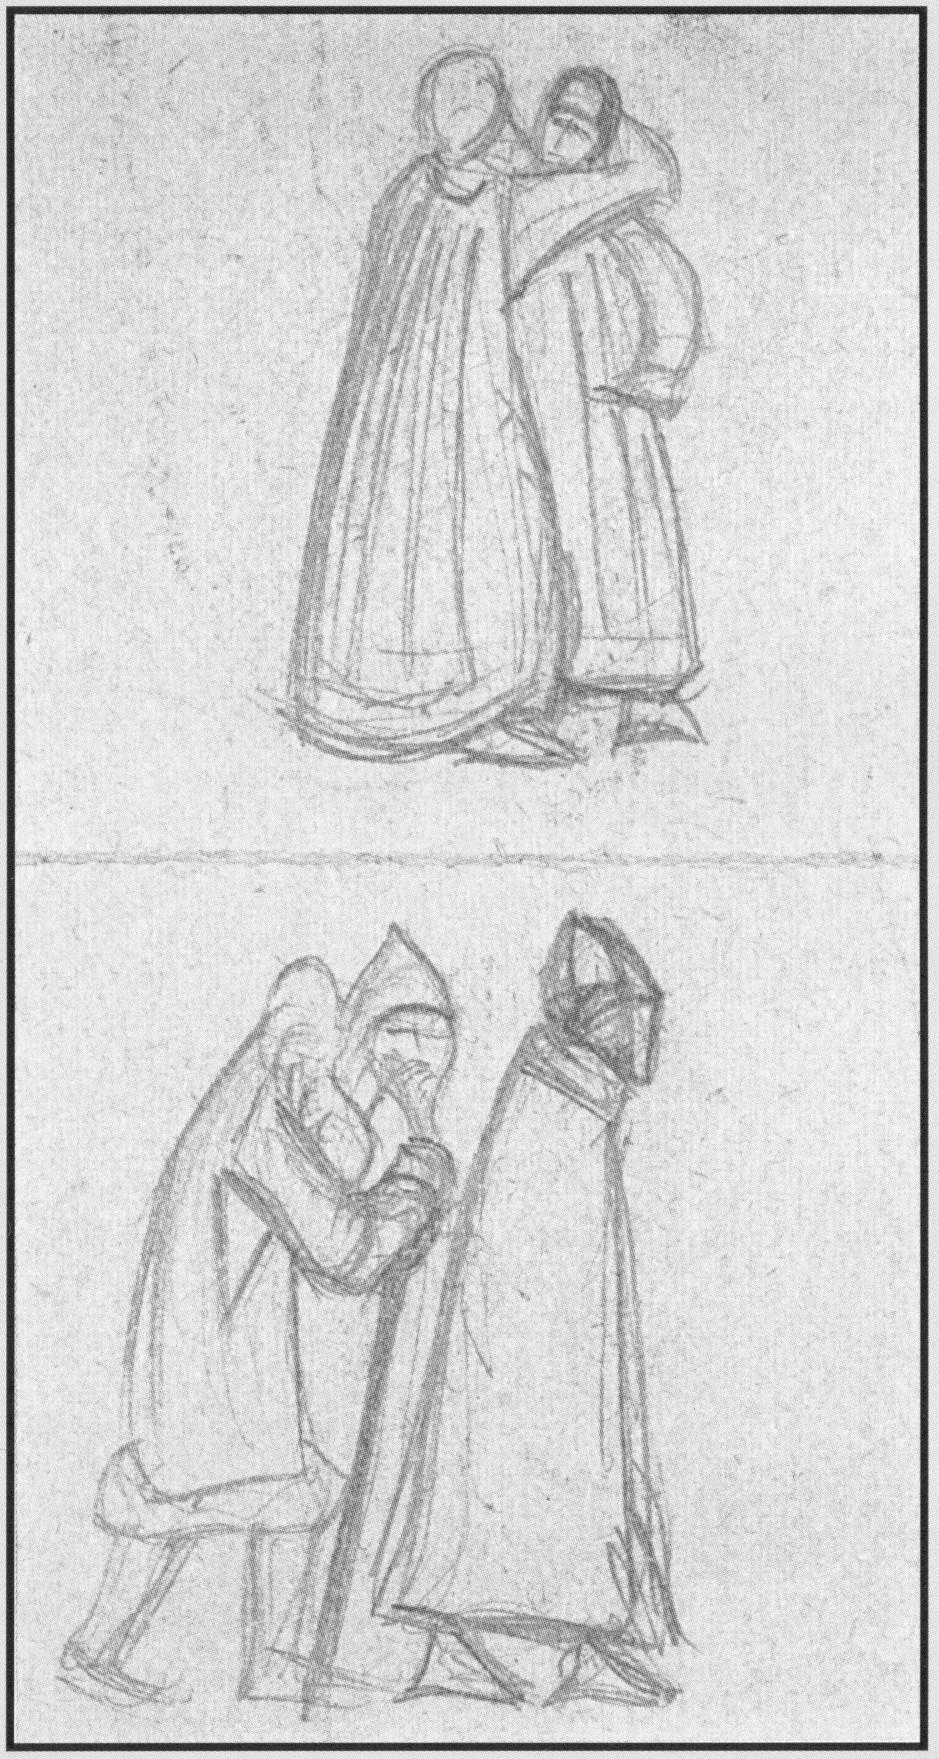 Н.К.Рерих. Две женские фигуры в длинных одеждах. Две мужские фигуры. Наброски. 1917-1918 (?)